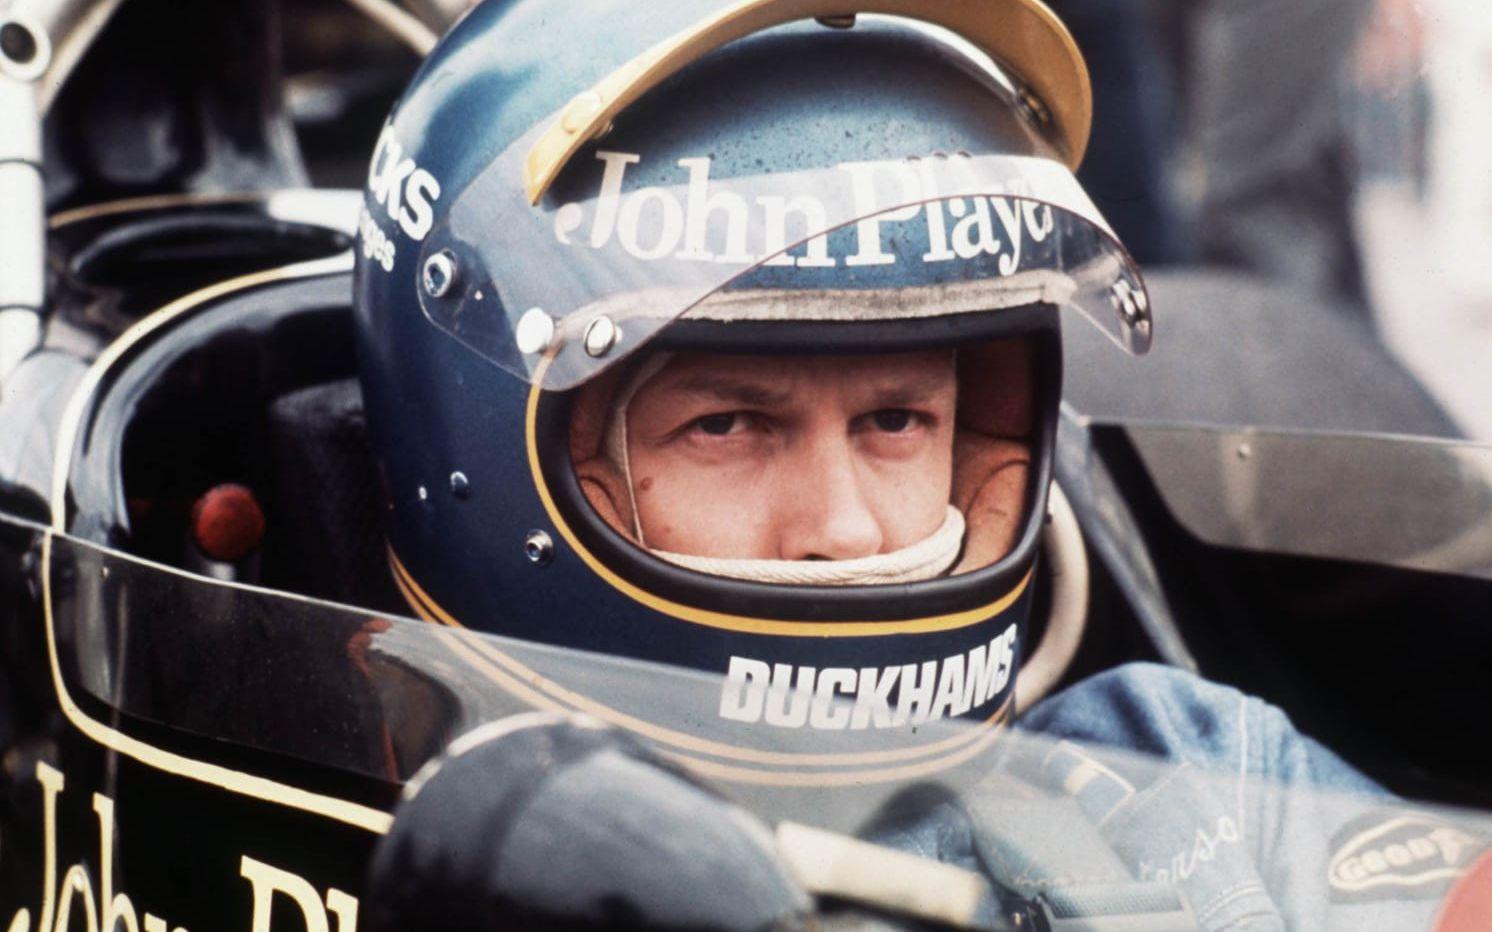 När många tänker tillbaka på Ronnie Peterson tänker man även på tobaksföretaget John Player som sponsrade svensken. Bild:TT